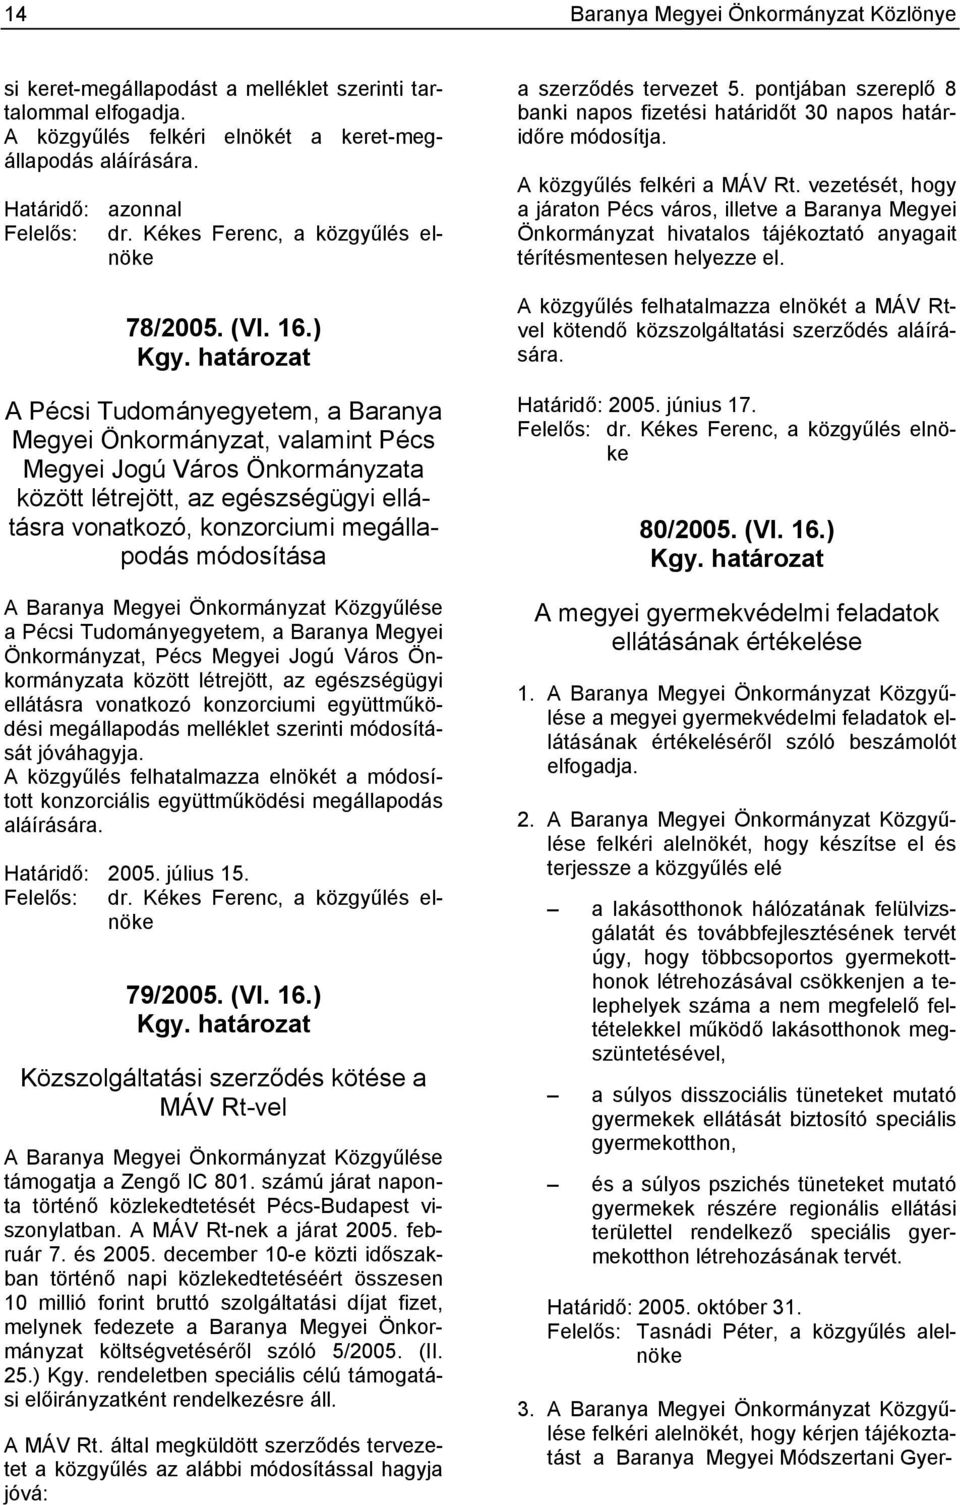 határozat A Pécsi Tudományegyetem, a Baranya Megyei Önkormányzat, valamint Pécs Megyei Jogú Város Önkormányzata között létrejött, az egészségügyi ellátásra vonatkozó, konzorciumi megállapodás